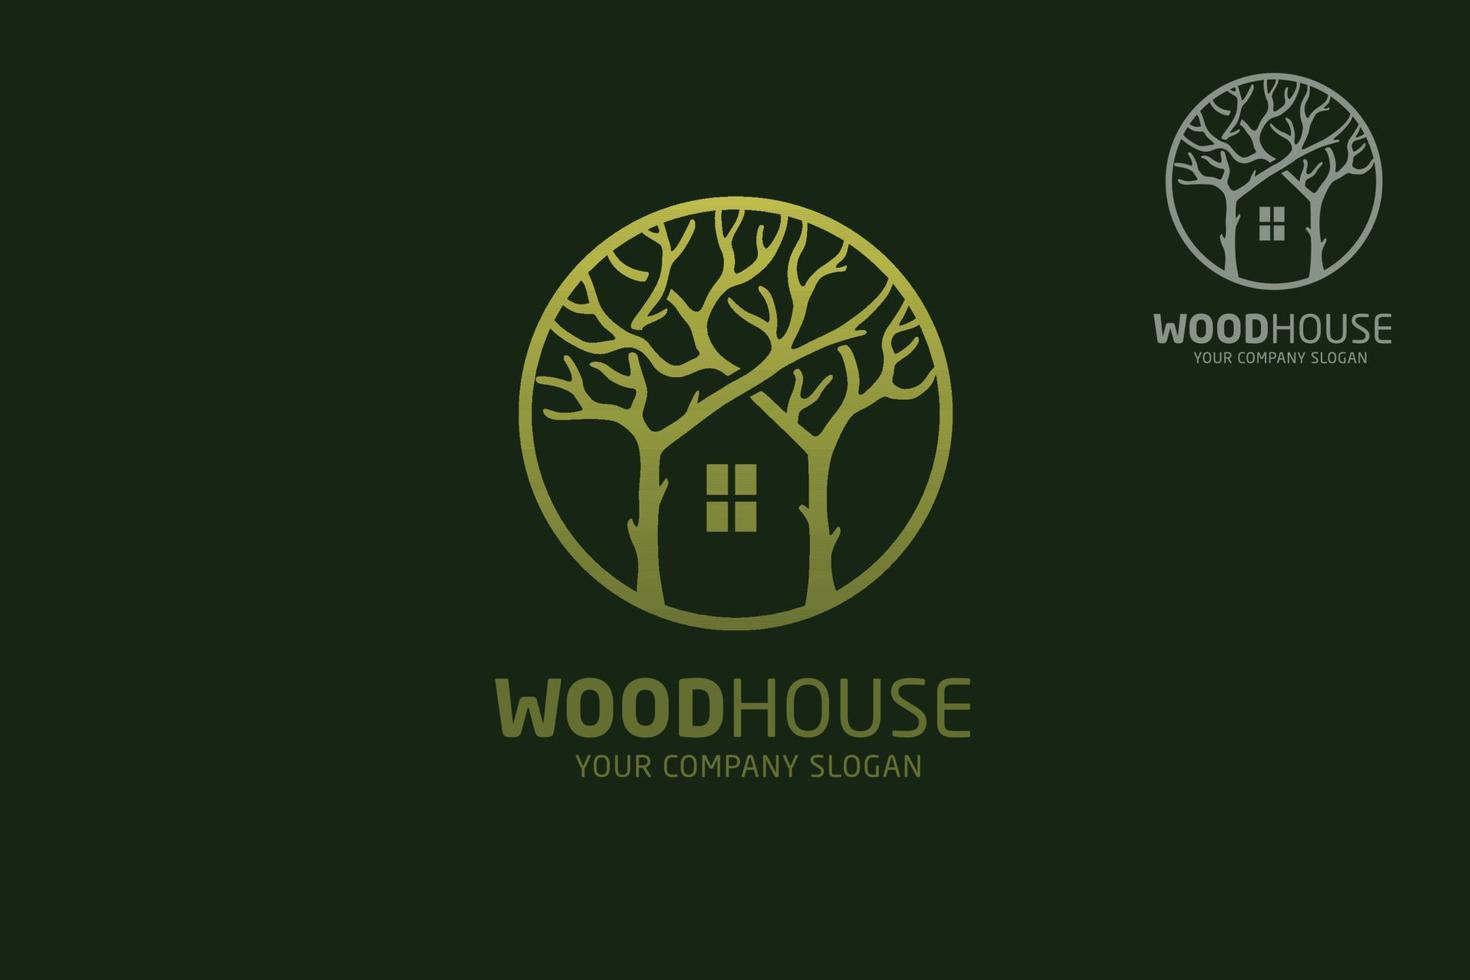 trä hus vektor logotyp mall. designmall av två träd integreras med ett hus som gjorts från en enkel repa. det är bra för att symbolisera en fastighets- eller trähusverksamhet.